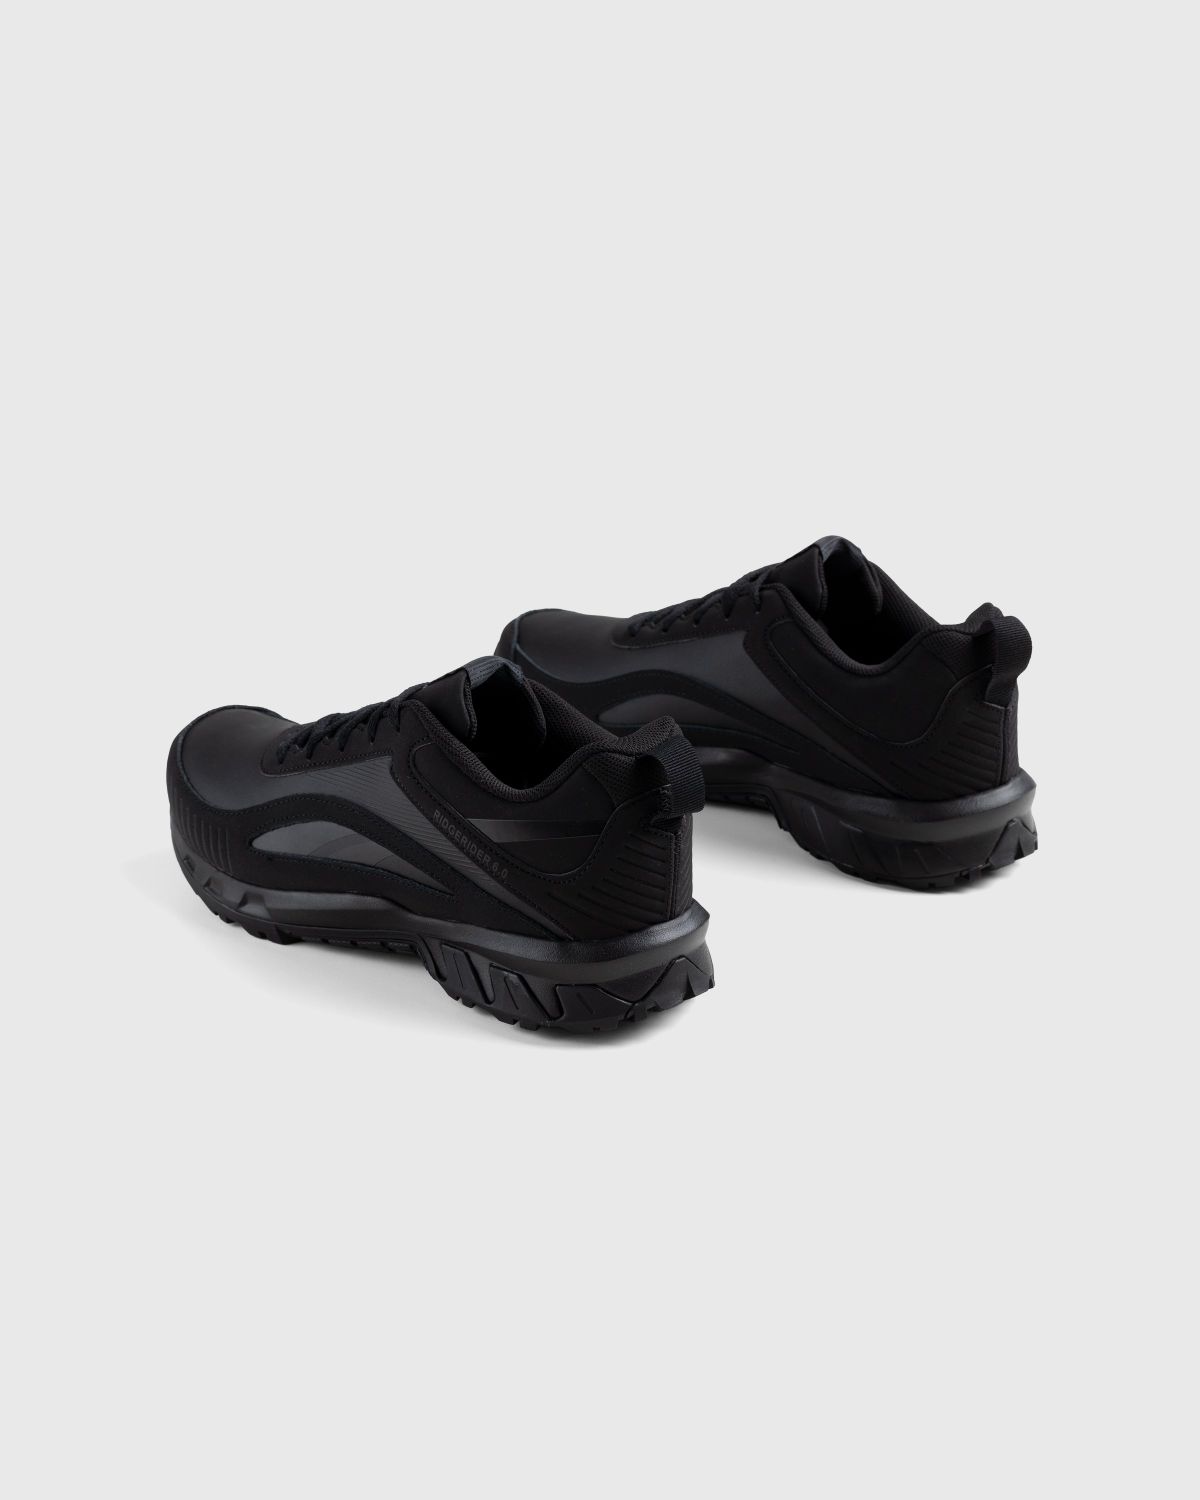 Reebok – Ridgerider 6.0 Leather Black - Low Top Sneakers - Black - Image 5